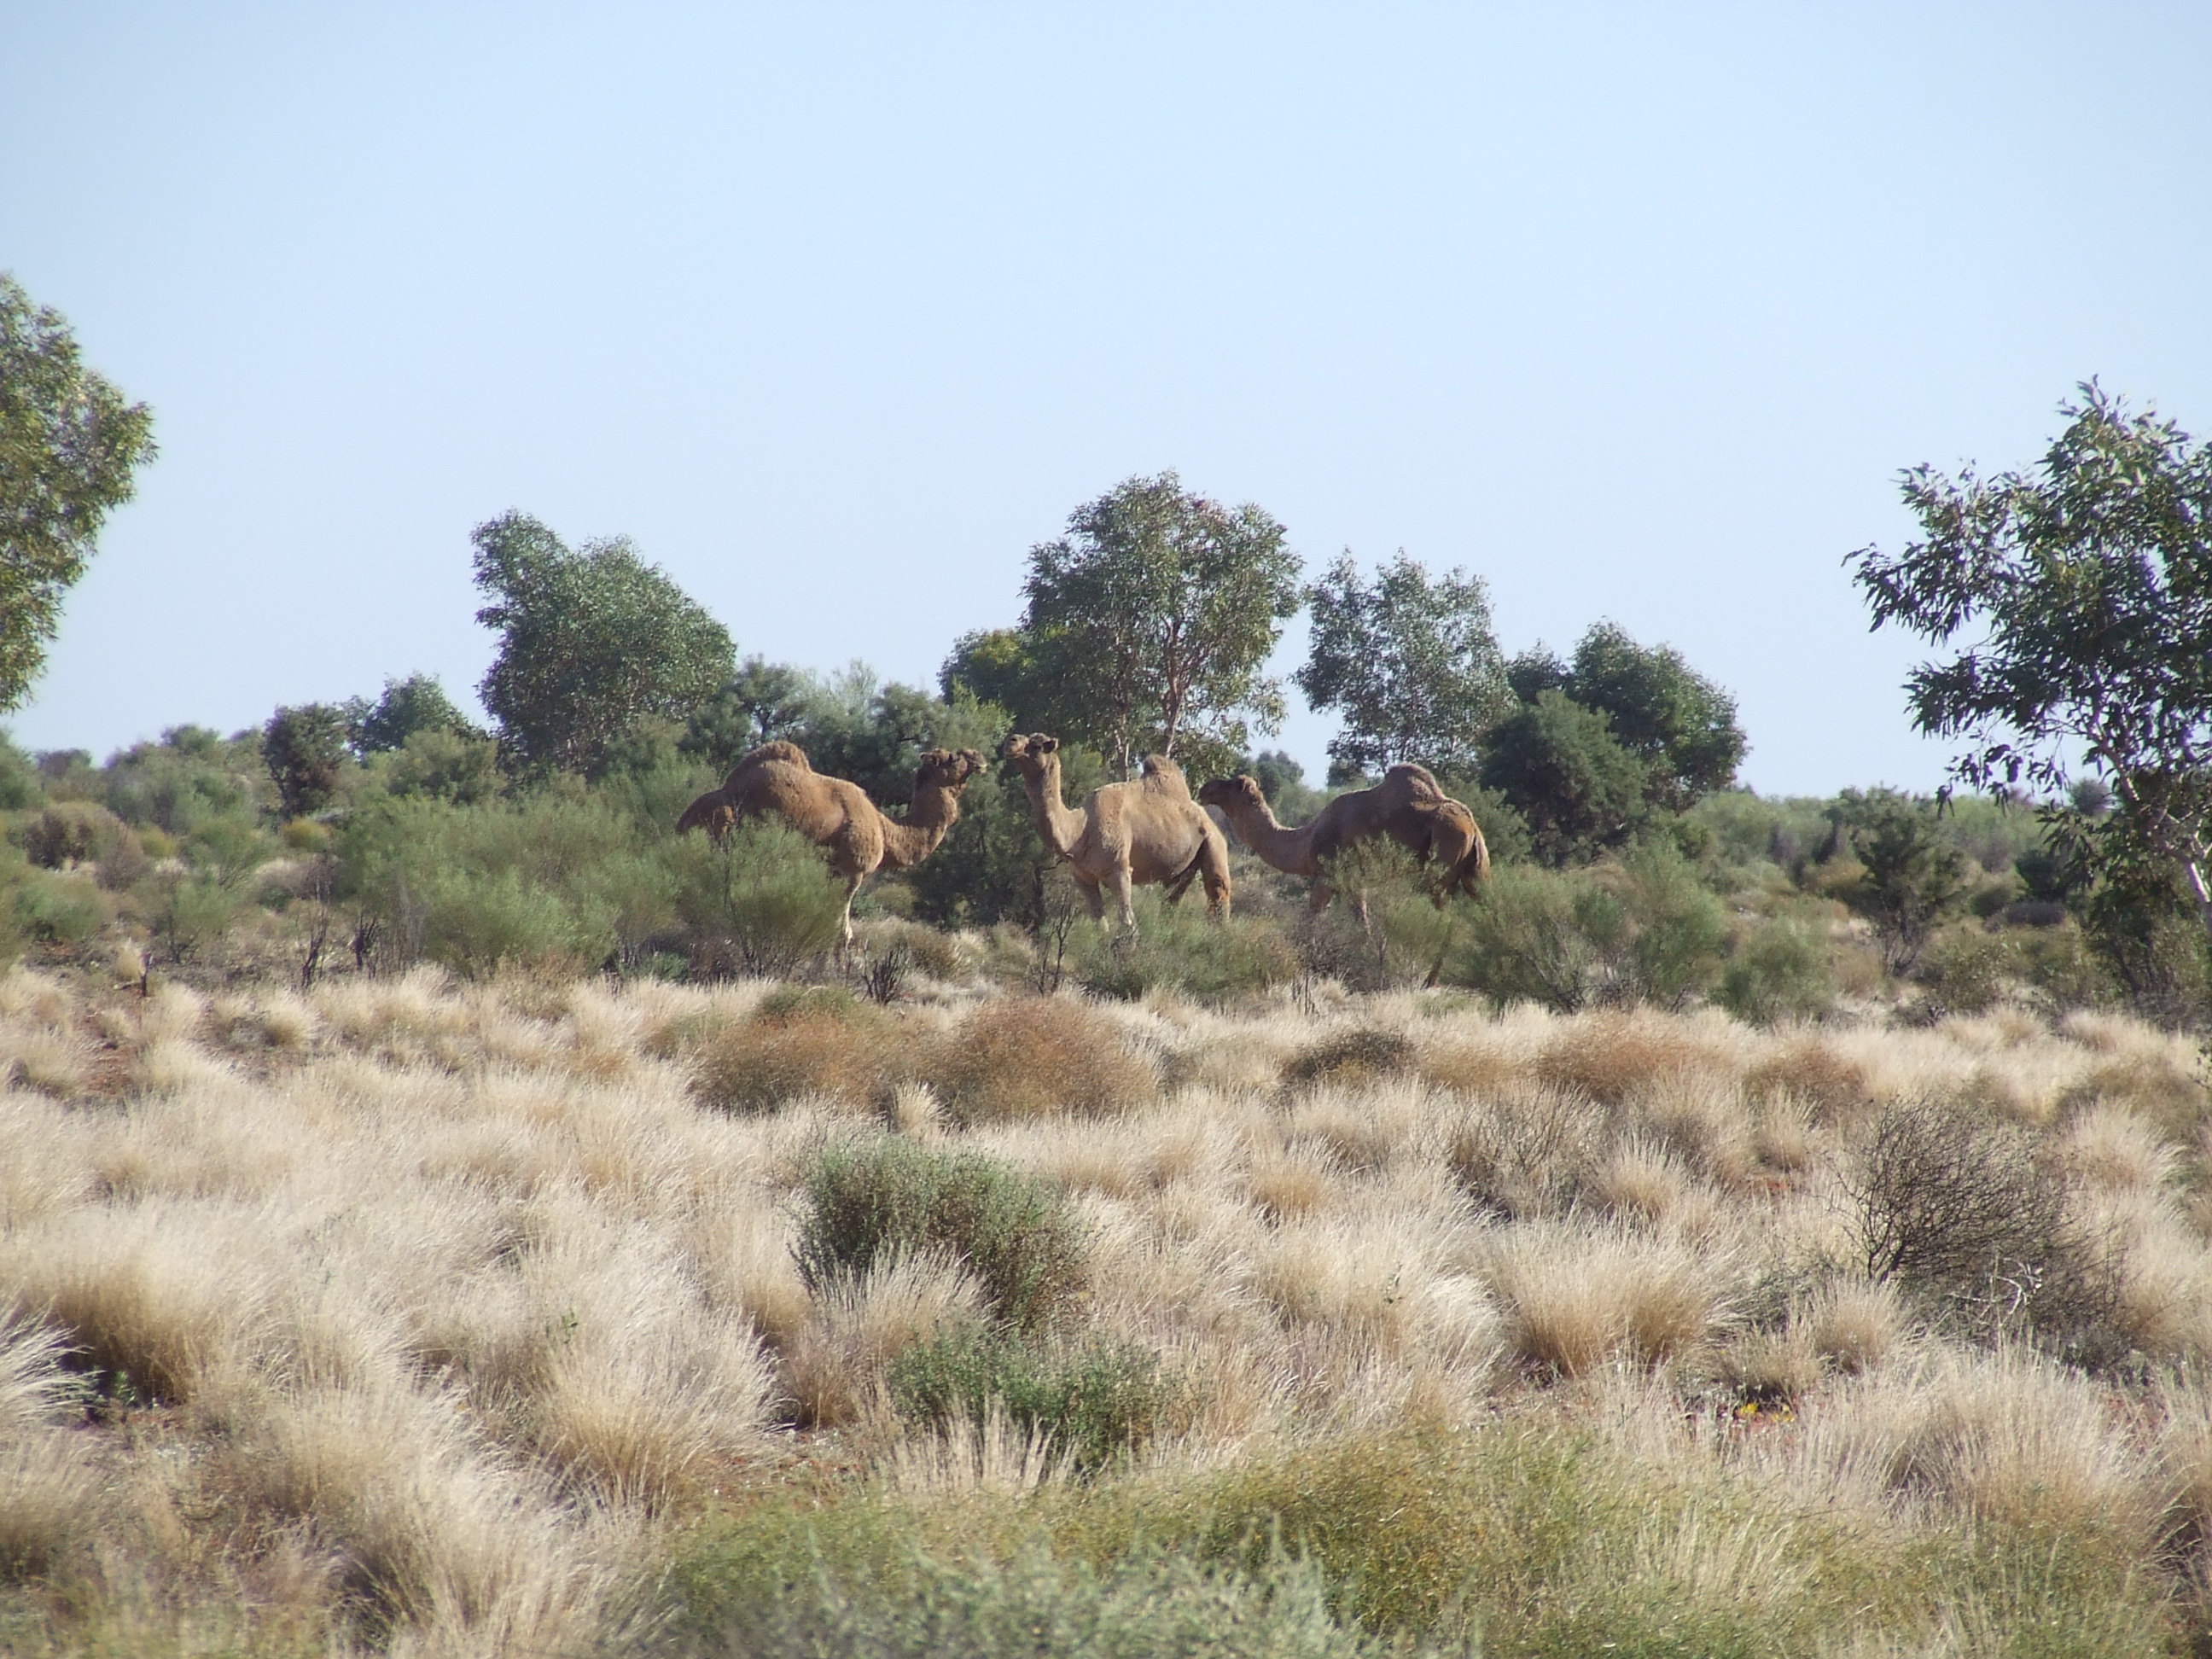 A Wallach/Camelus dromedaries in Australia